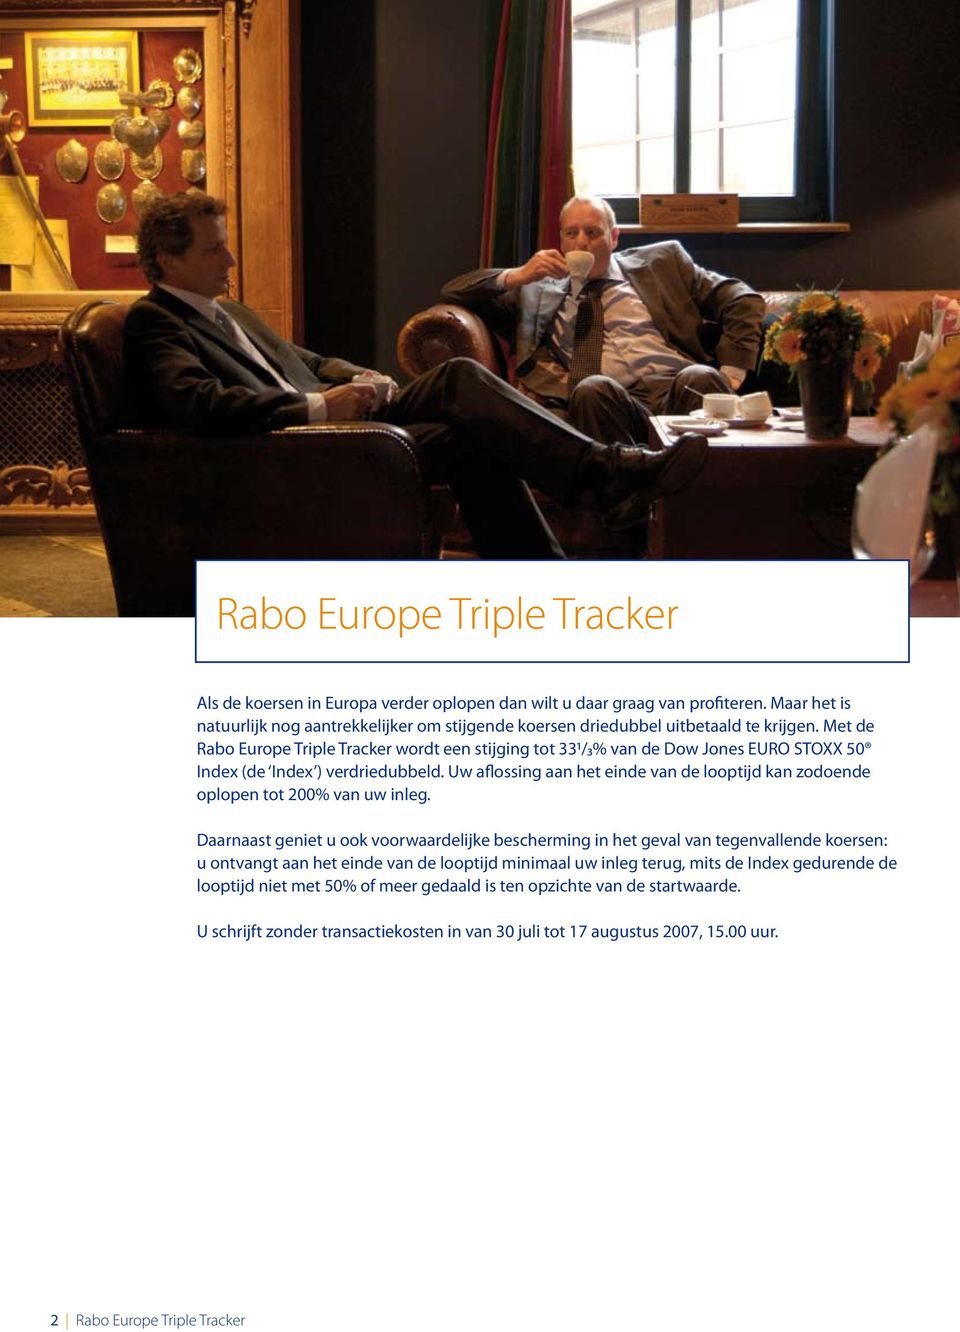 Met de Rabo Europe Triple Tracker wordt een stijging tot 331/₃% van de Dow Jones EURO STOXX 50 Index (de Index ) verdriedubbeld.